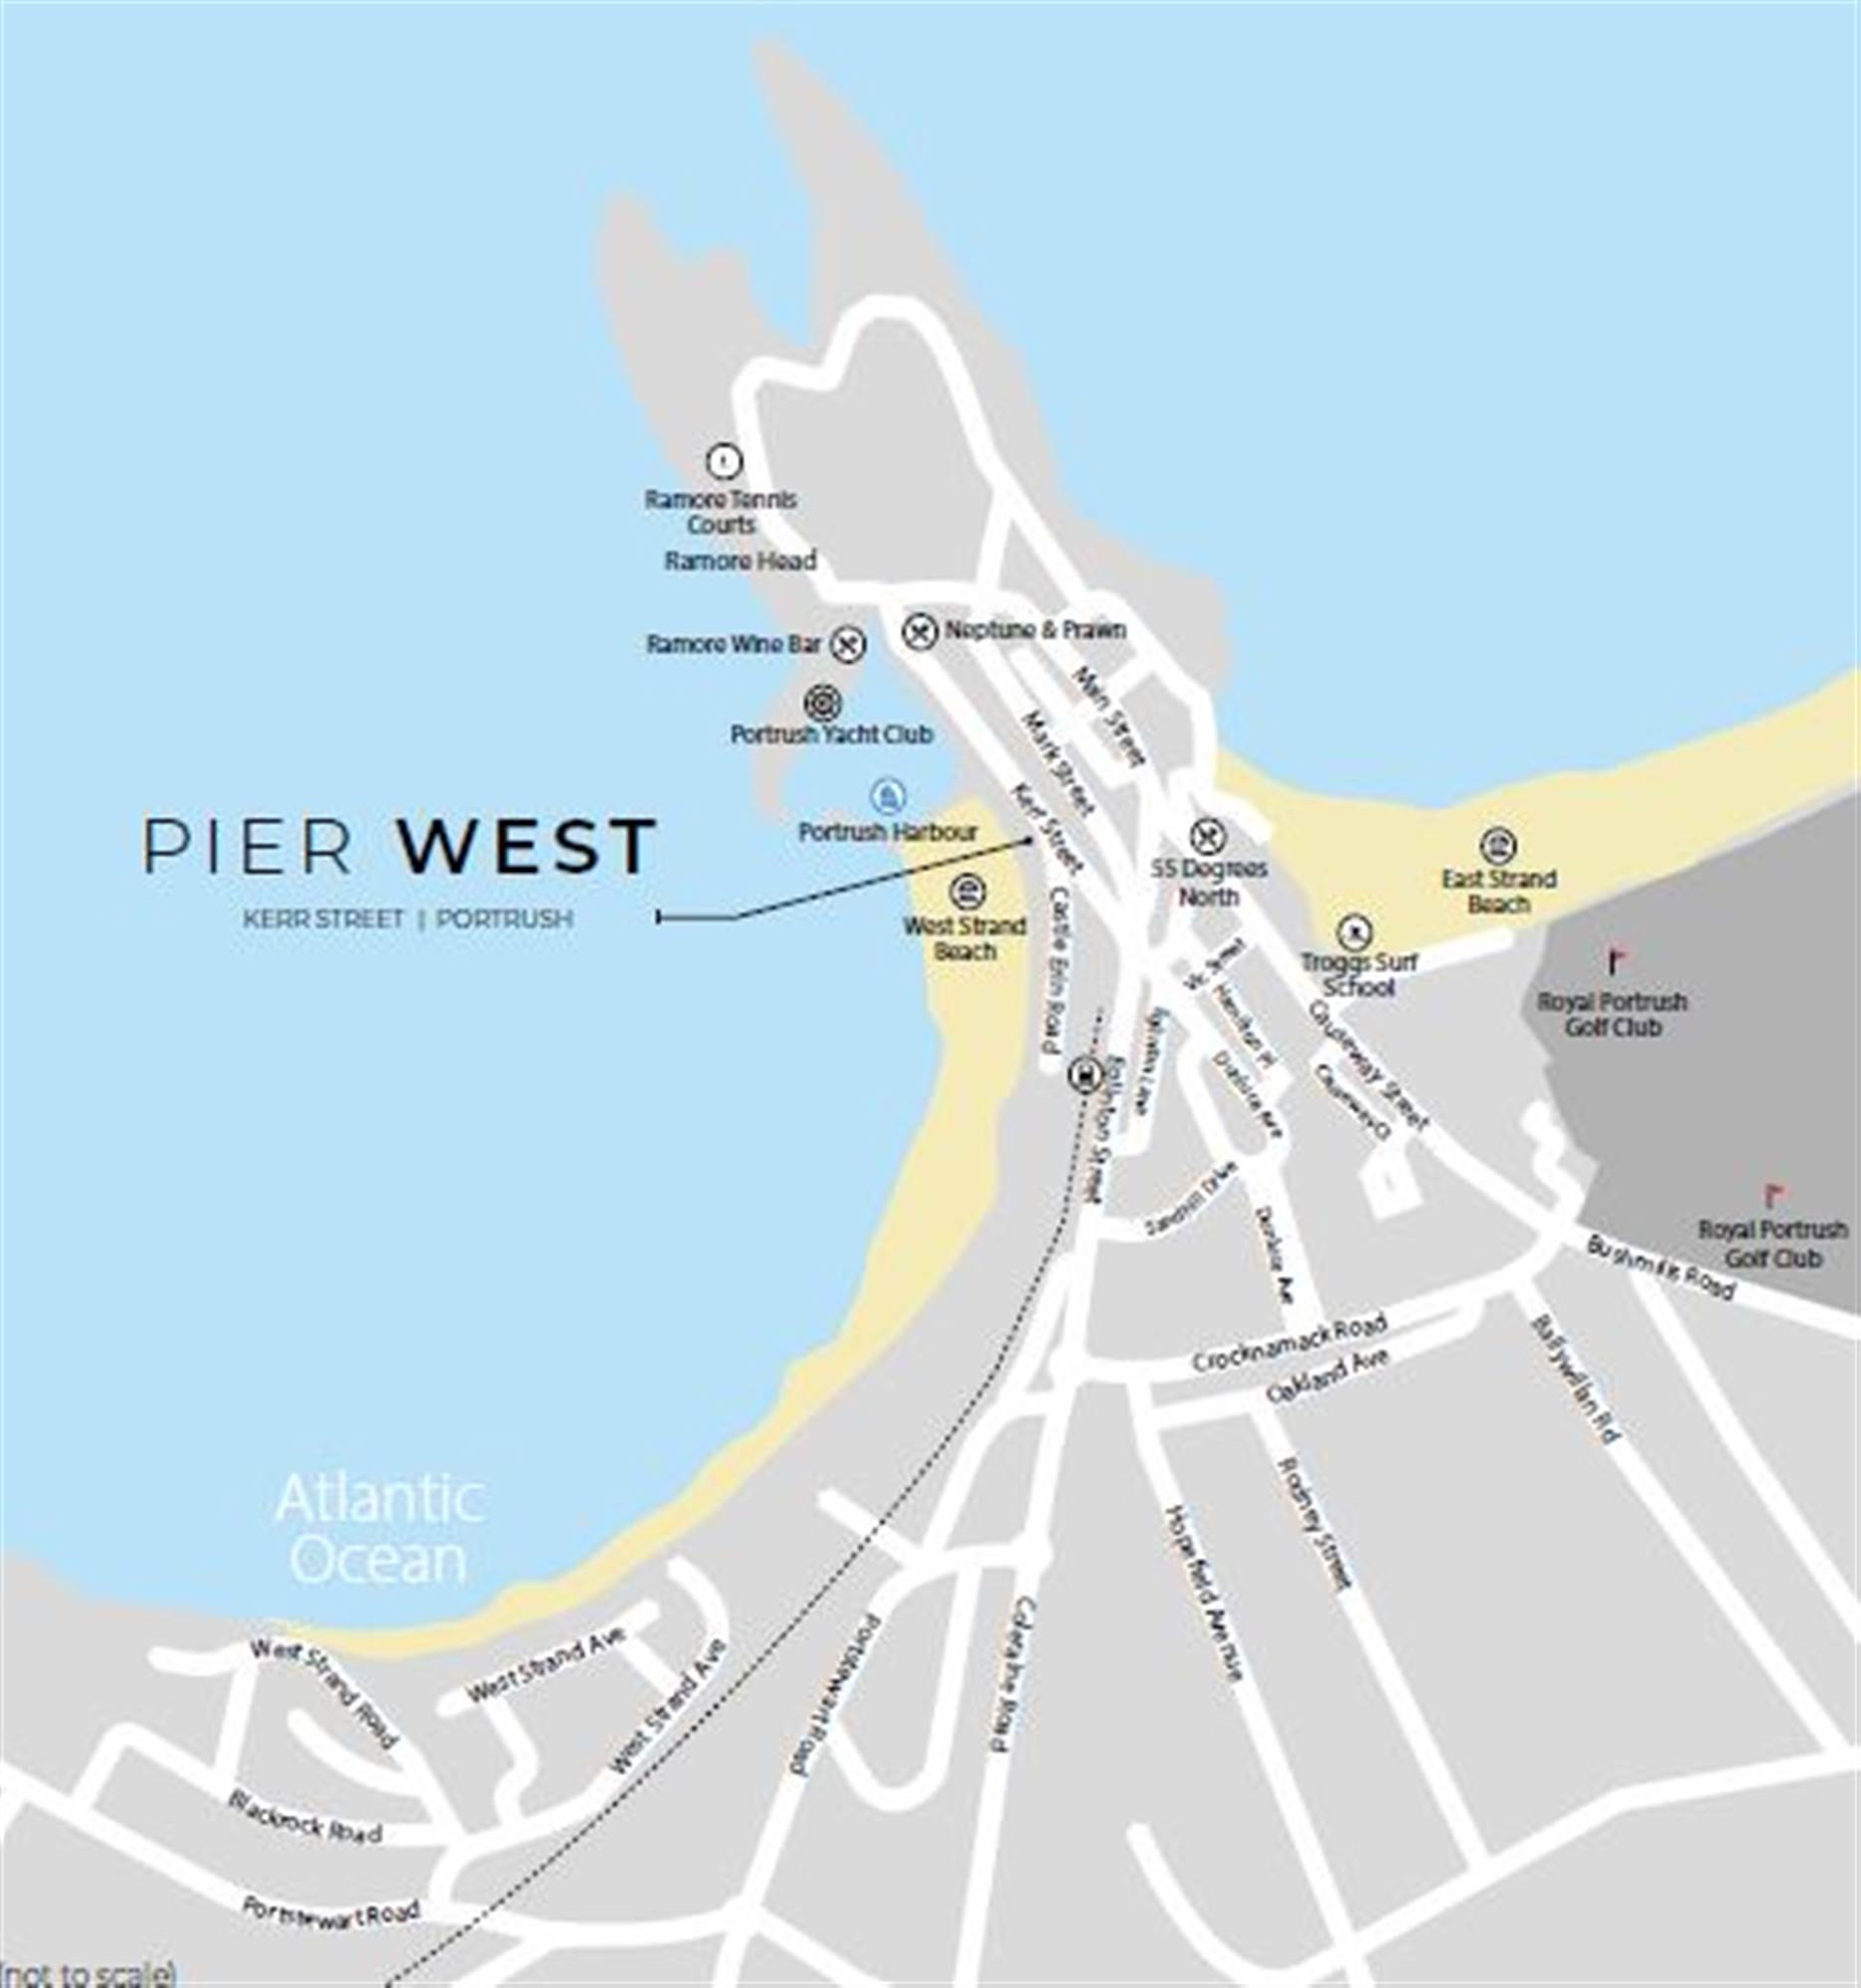 4 Pier West